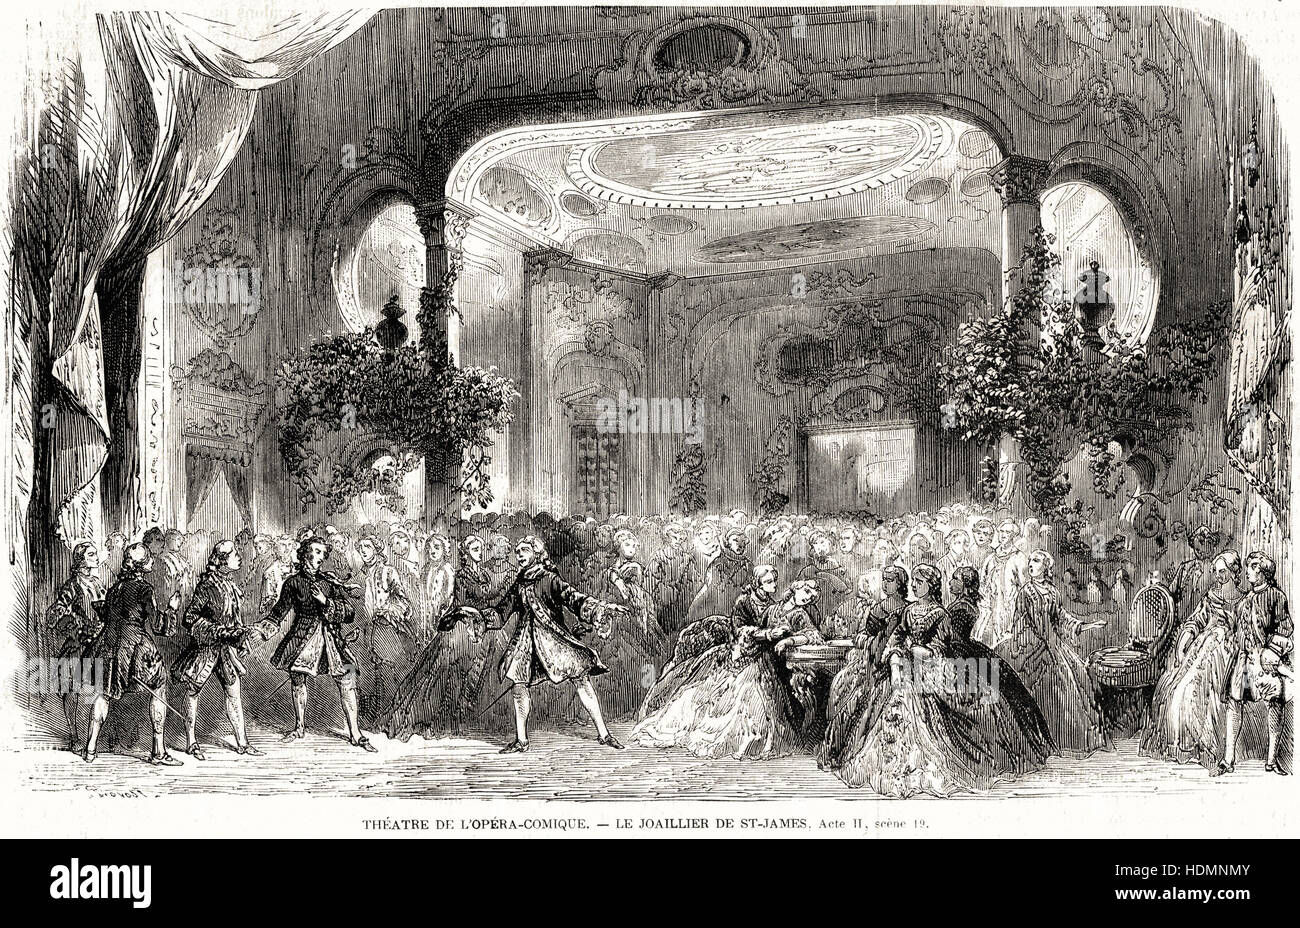 Illustrazione incisione 1862 Théâtre de l'Opéra-Comique - Il gioielliere di San Giacomo Foto Stock